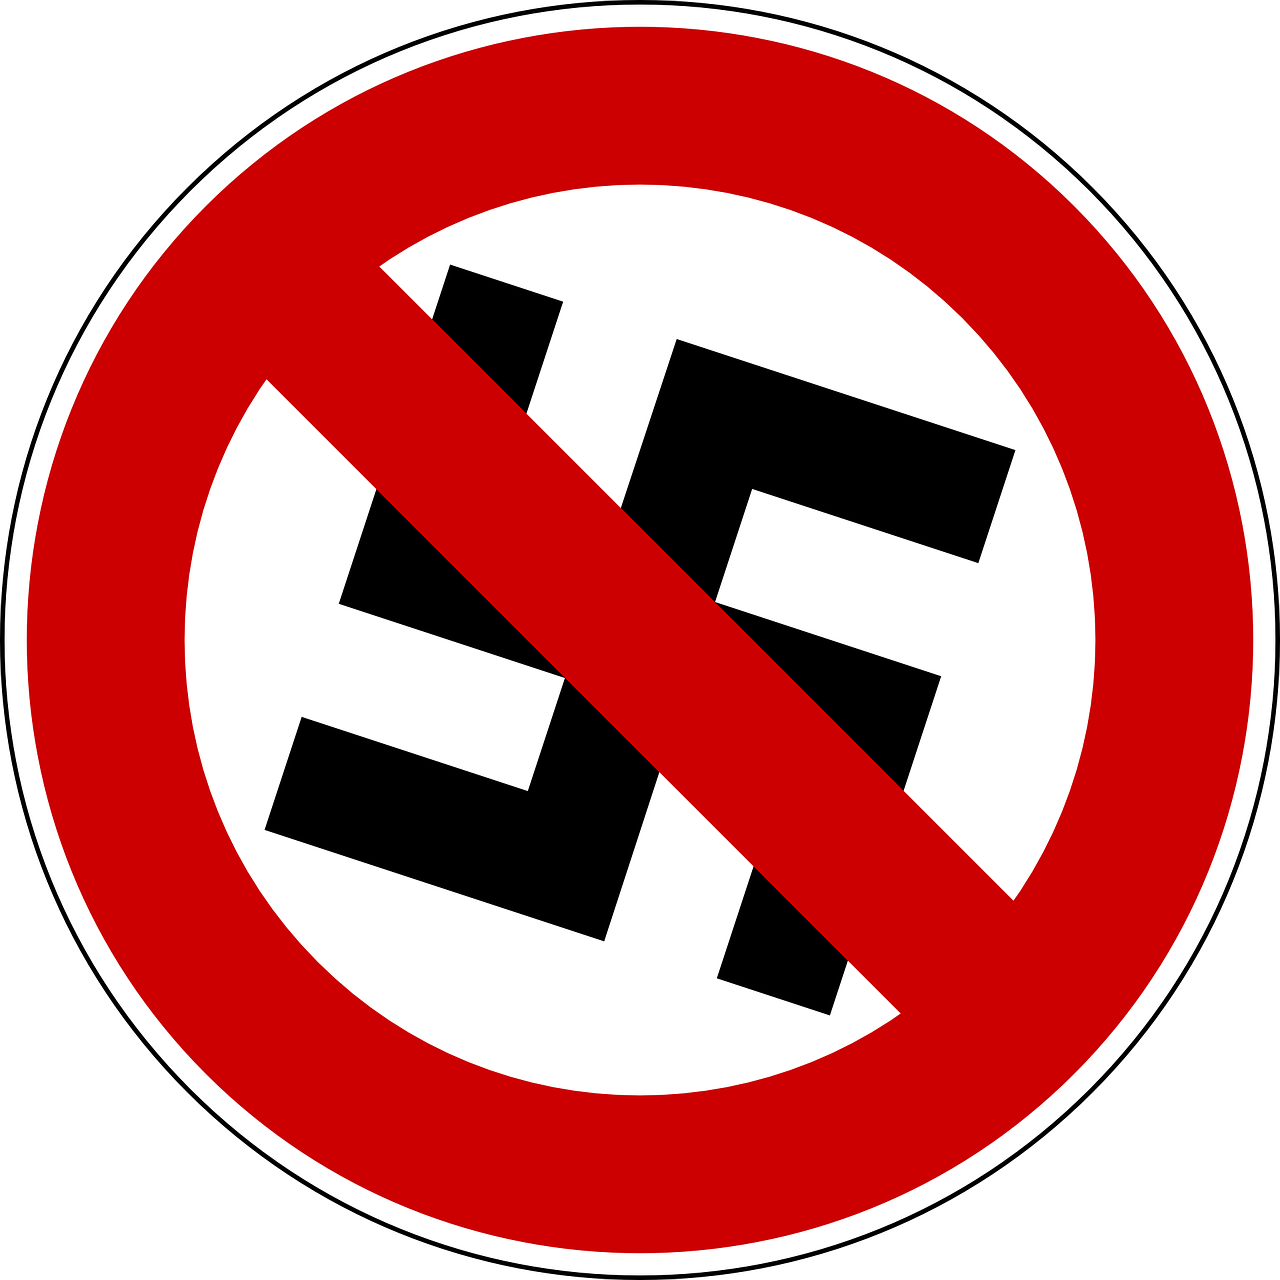 Swastika Prohibited Against